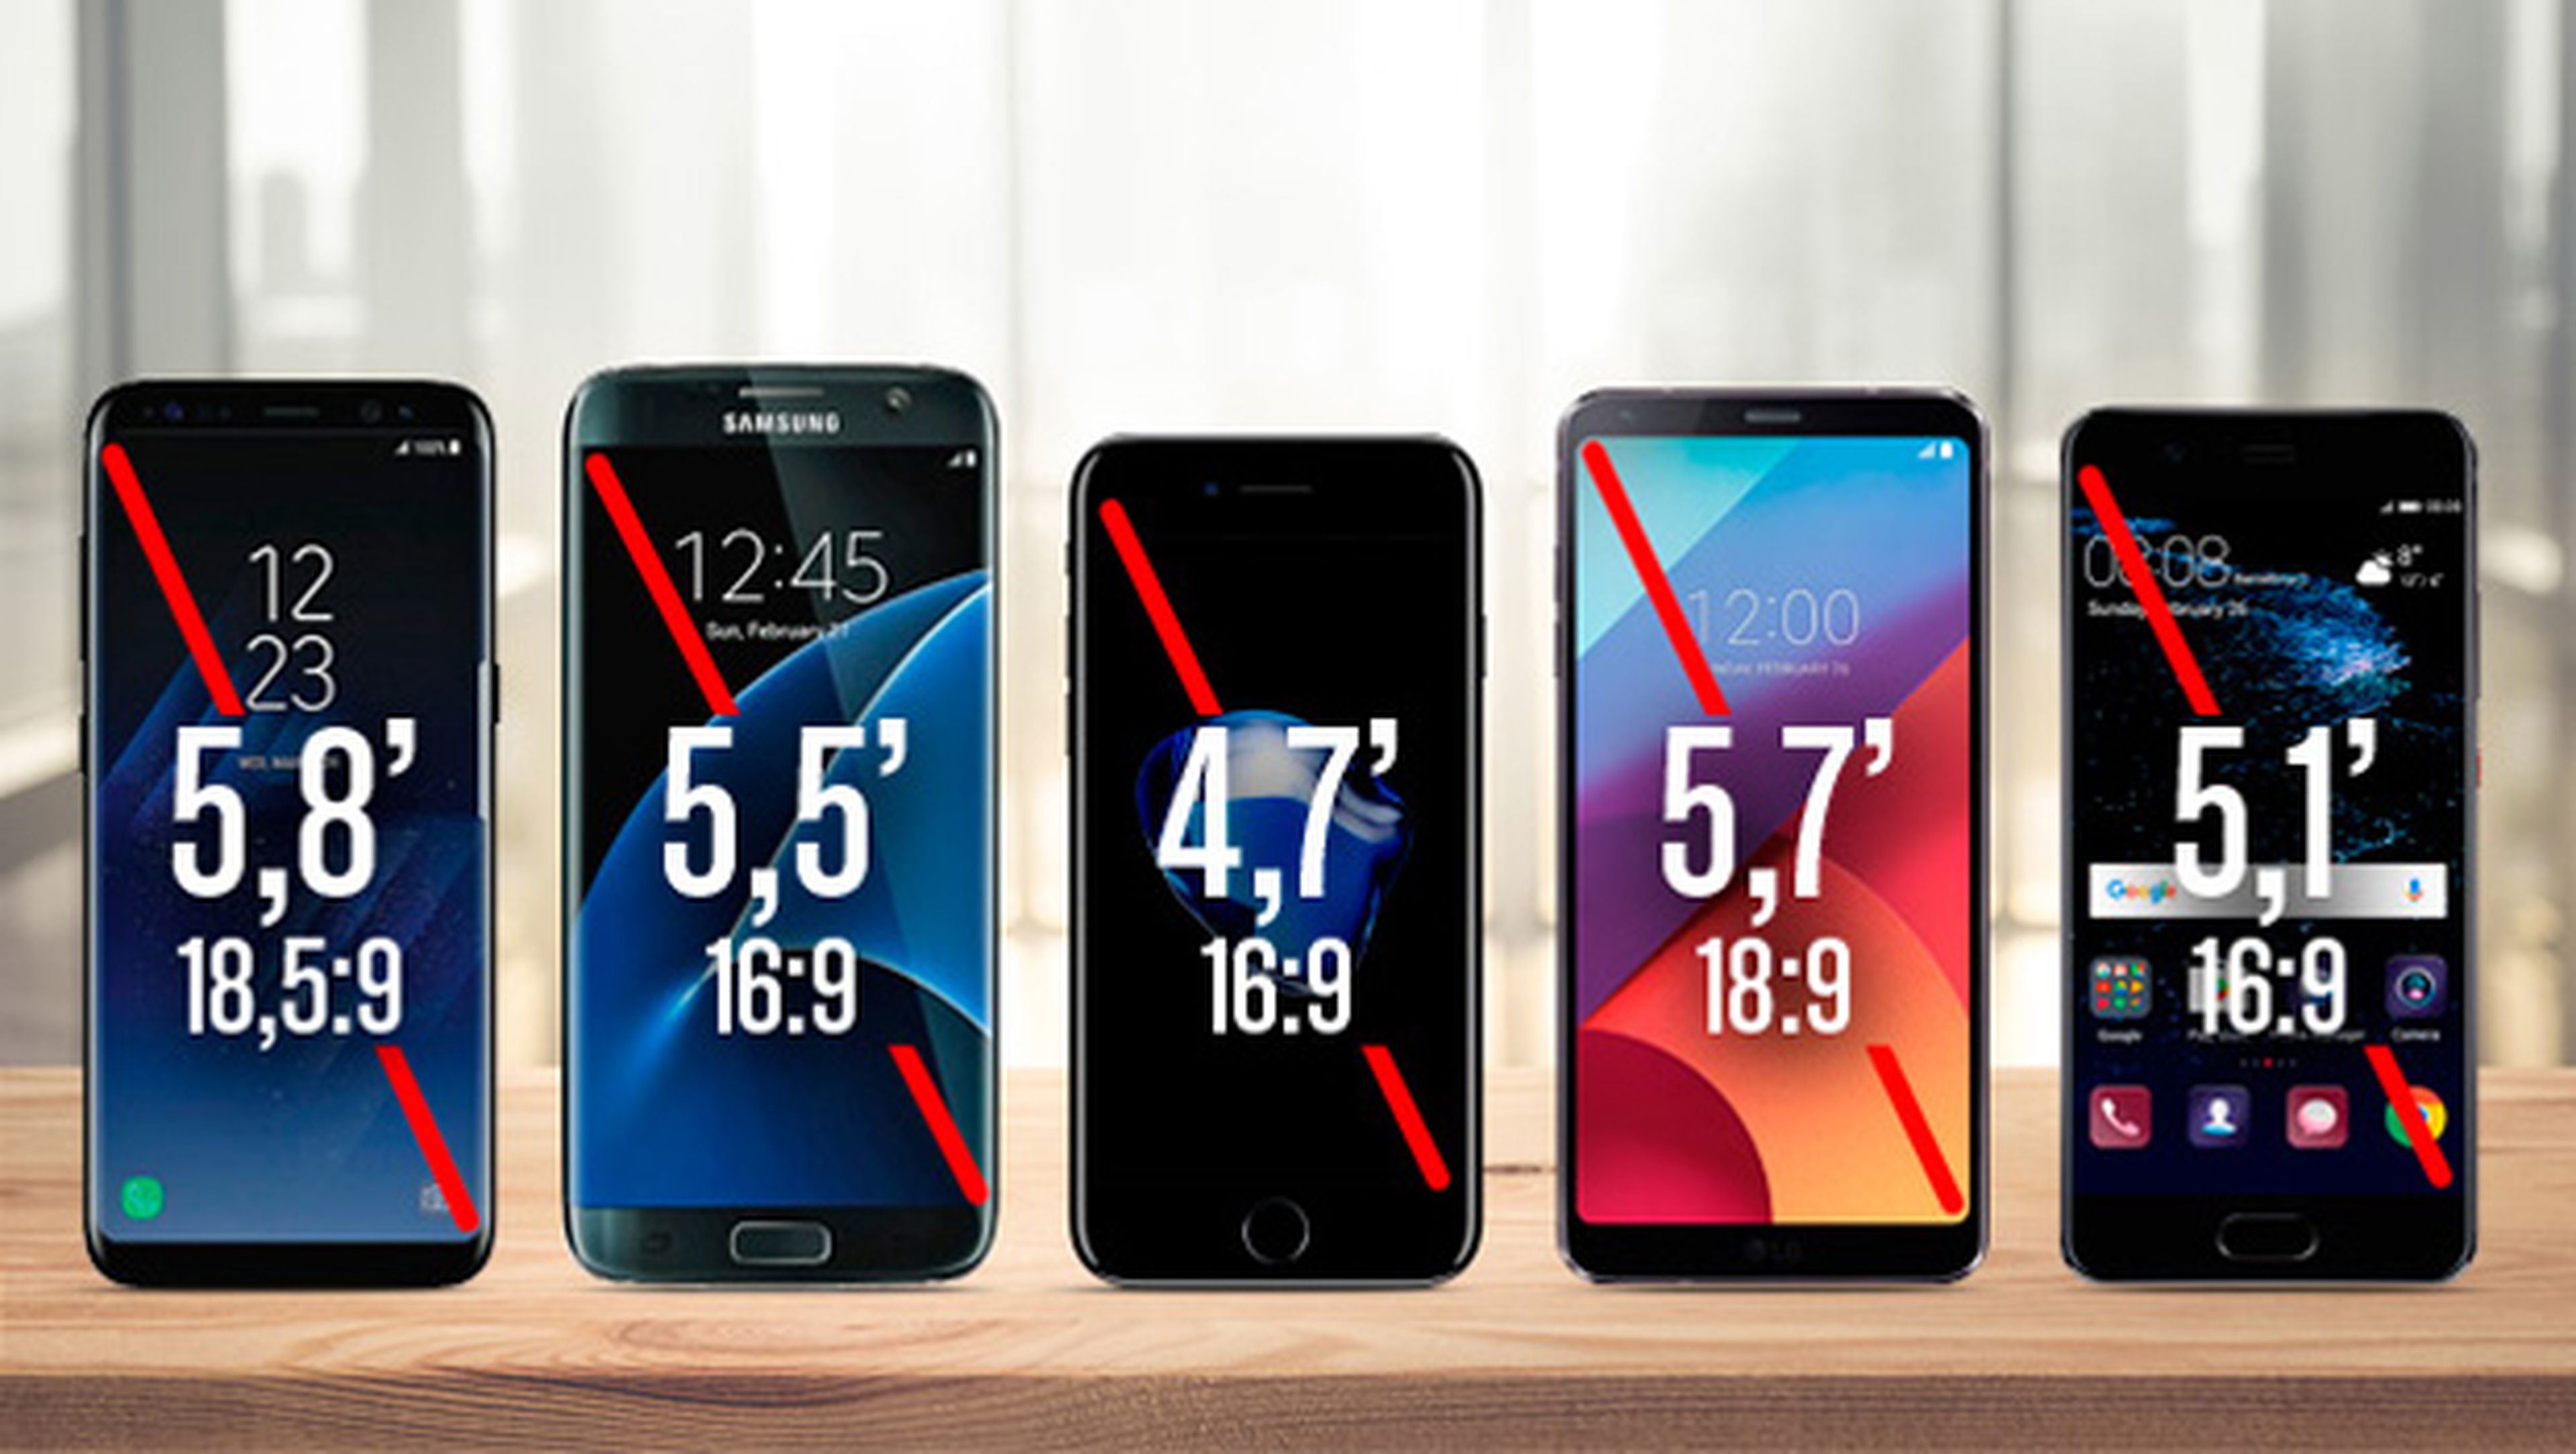 Comparativa moviles Galaxy S8